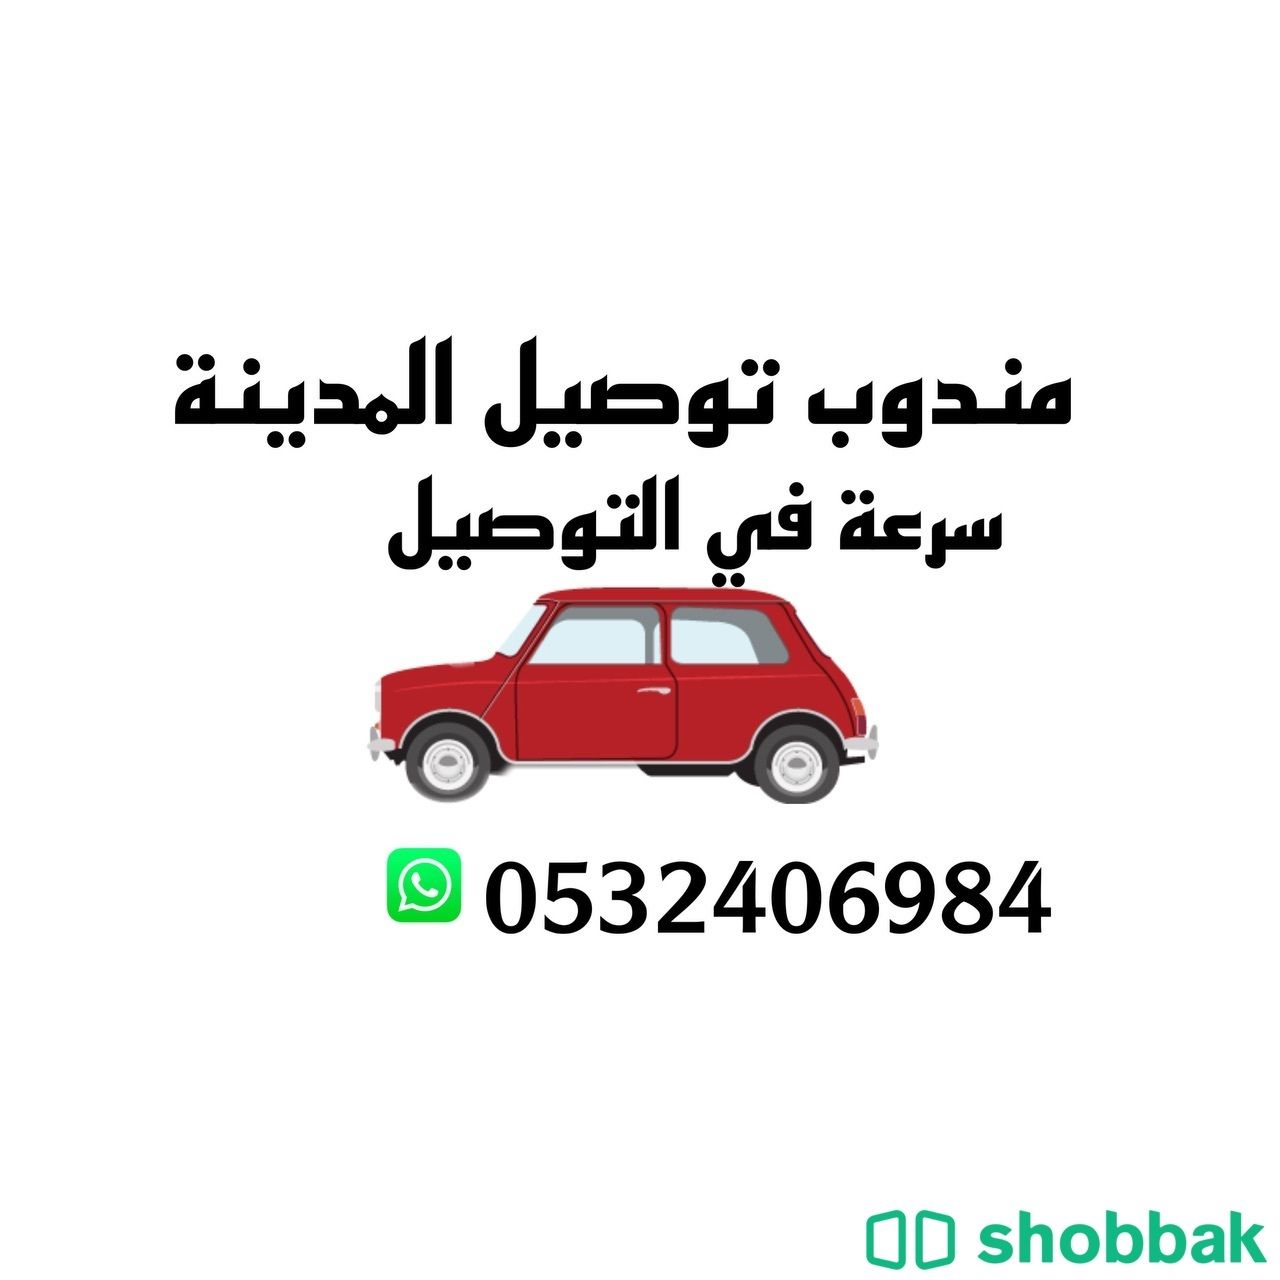 مندوب توصيل المدينة  Shobbak Saudi Arabia